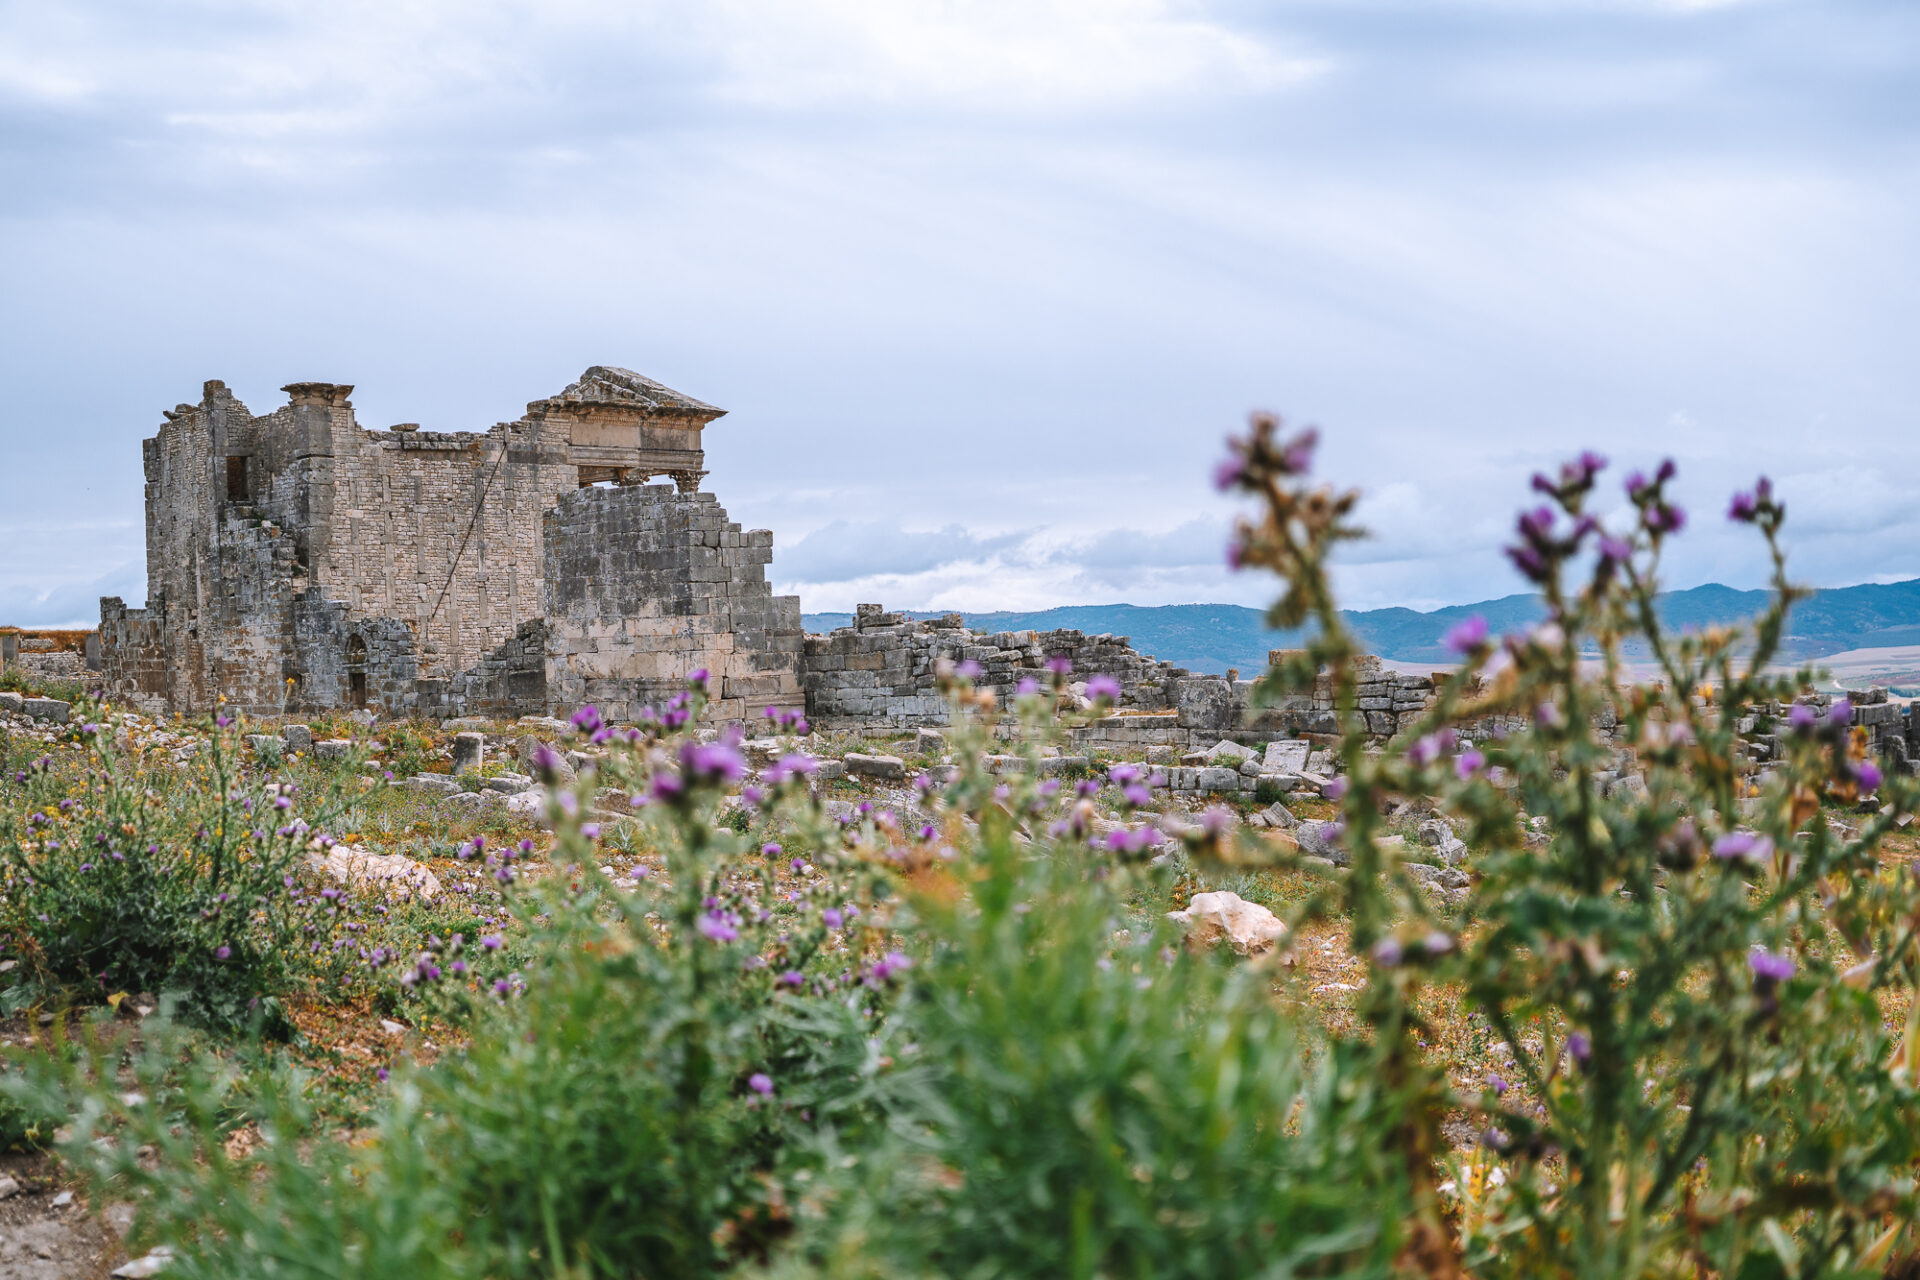 Ruins in Dougga, Tunisia